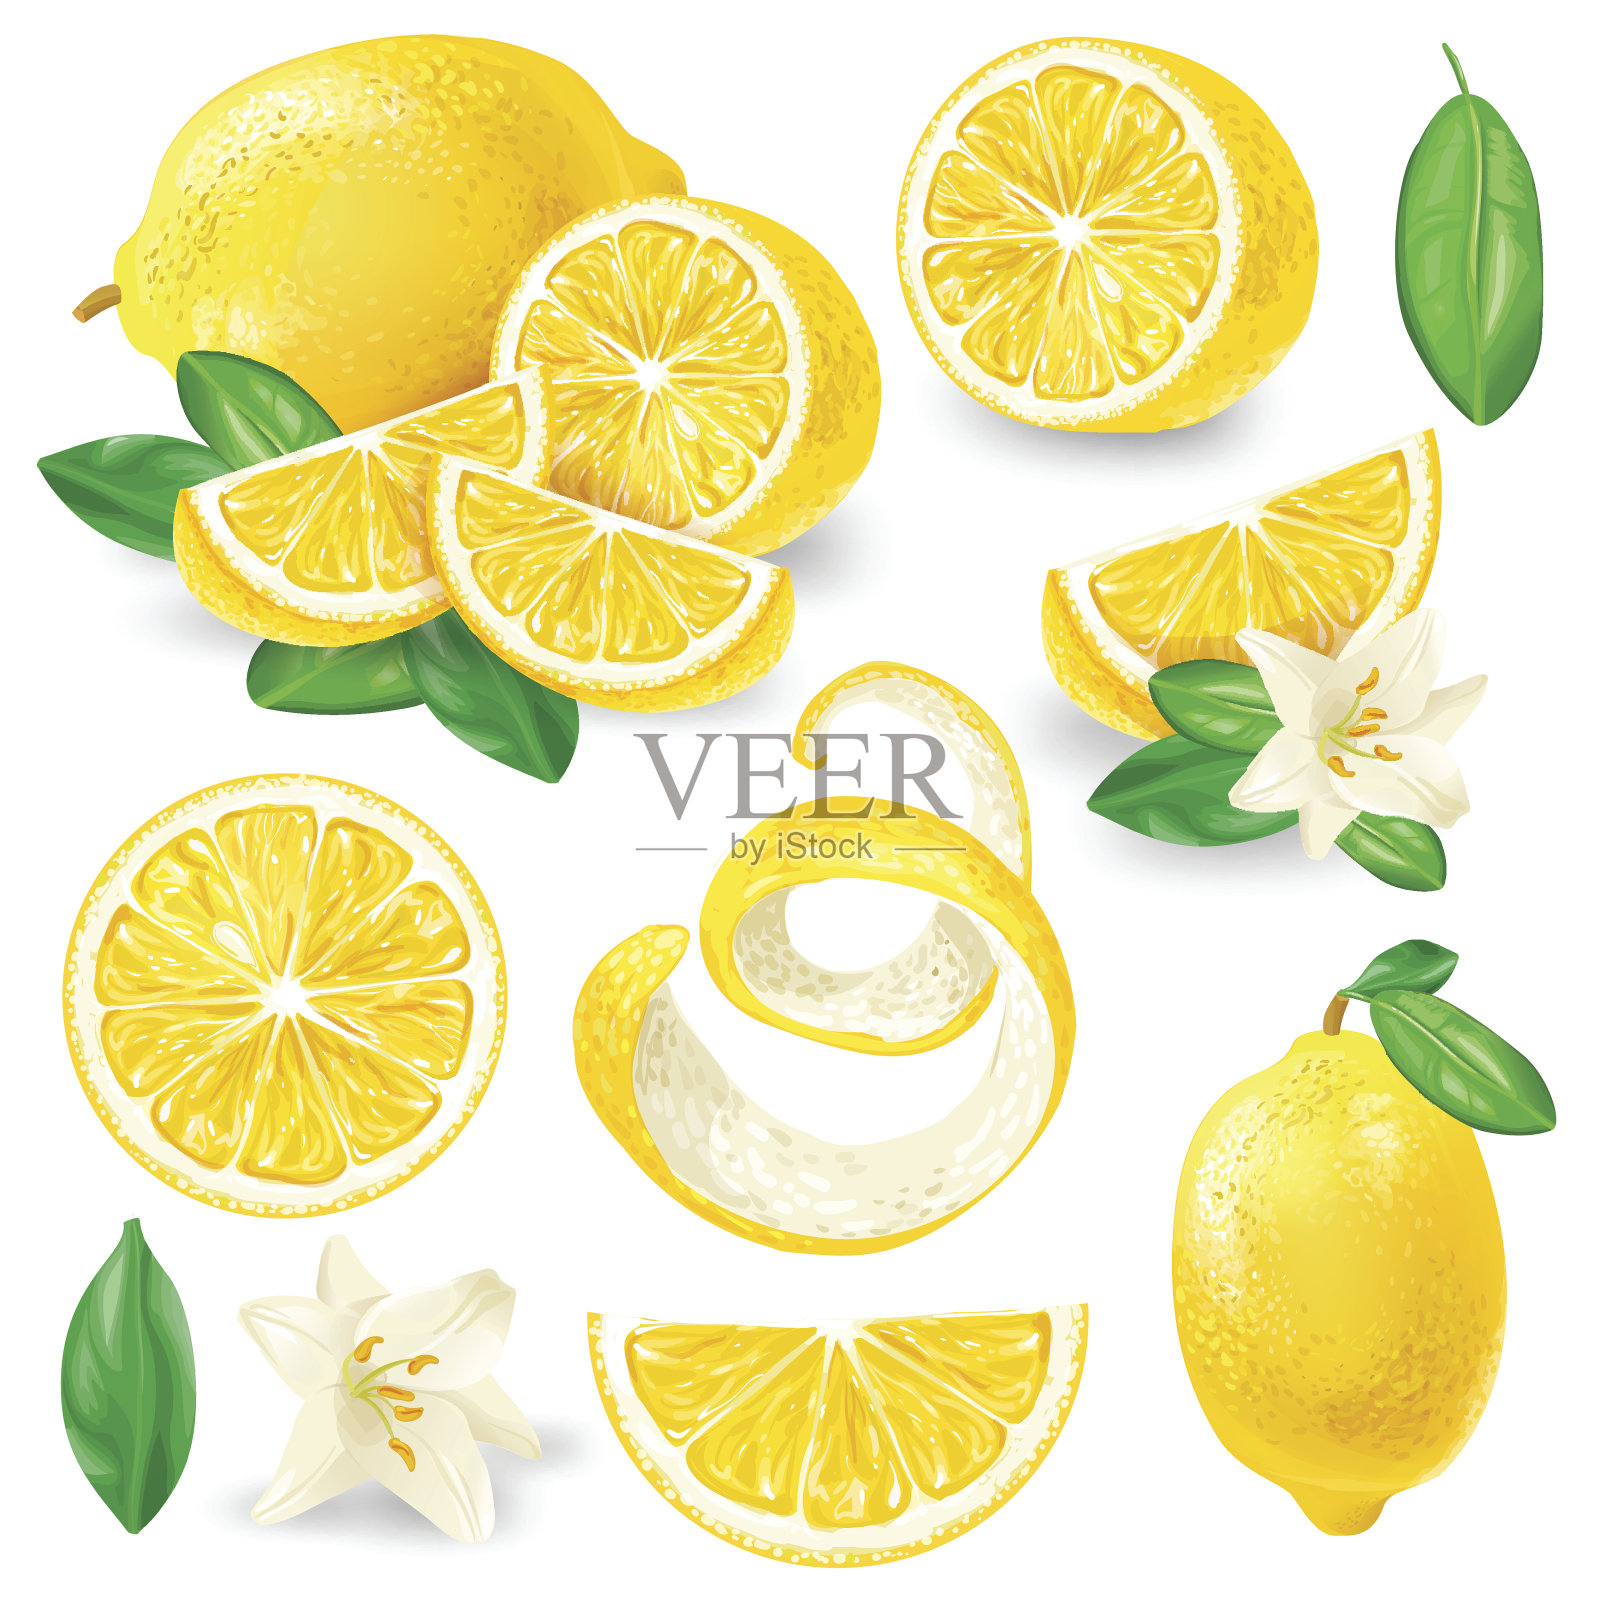 不同的柠檬与叶和花载体插画图片素材